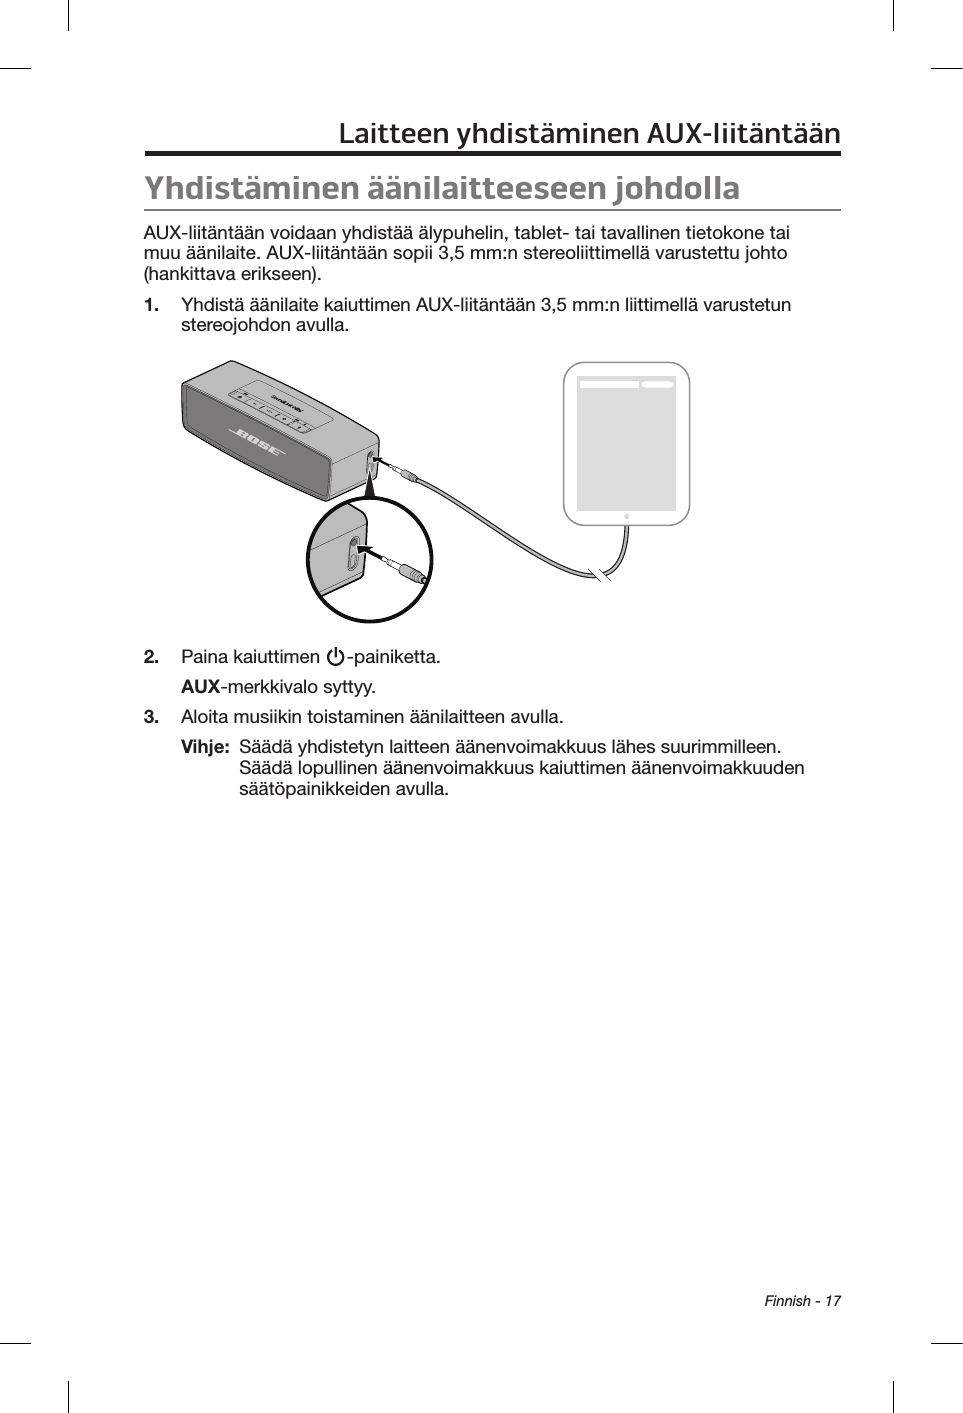  Finnish - 17Laitteen yhdistäminen AUX-liitäntäänYhdistäminen äänilaitteeseen johdollaAUX-liitäntään voidaan yhdistää älypuhelin, tablet- tai tavallinen tietokone tai muu äänilaite. AUX-liitäntään sopii 3,5 mm:n stereoliittimellä varustettu johto (hankittava erikseen).1.  Yhdistä äänilaite kaiuttimen AUX-liitäntään 3,5 mm:n liittimellä varustetun stereojohdon avulla.2.  Paina kaiuttimen  -painiketta.AUX-merkkivalo syttyy.3.  Aloita musiikin toistaminen äänilaitteen avulla.Vihje:   Säädä yhdistetyn laitteen äänenvoimakkuus lähes suurimmilleen. Säädä lopullinen äänenvoimakkuus kaiuttimen äänenvoimakkuuden säätöpainikkeiden avulla.